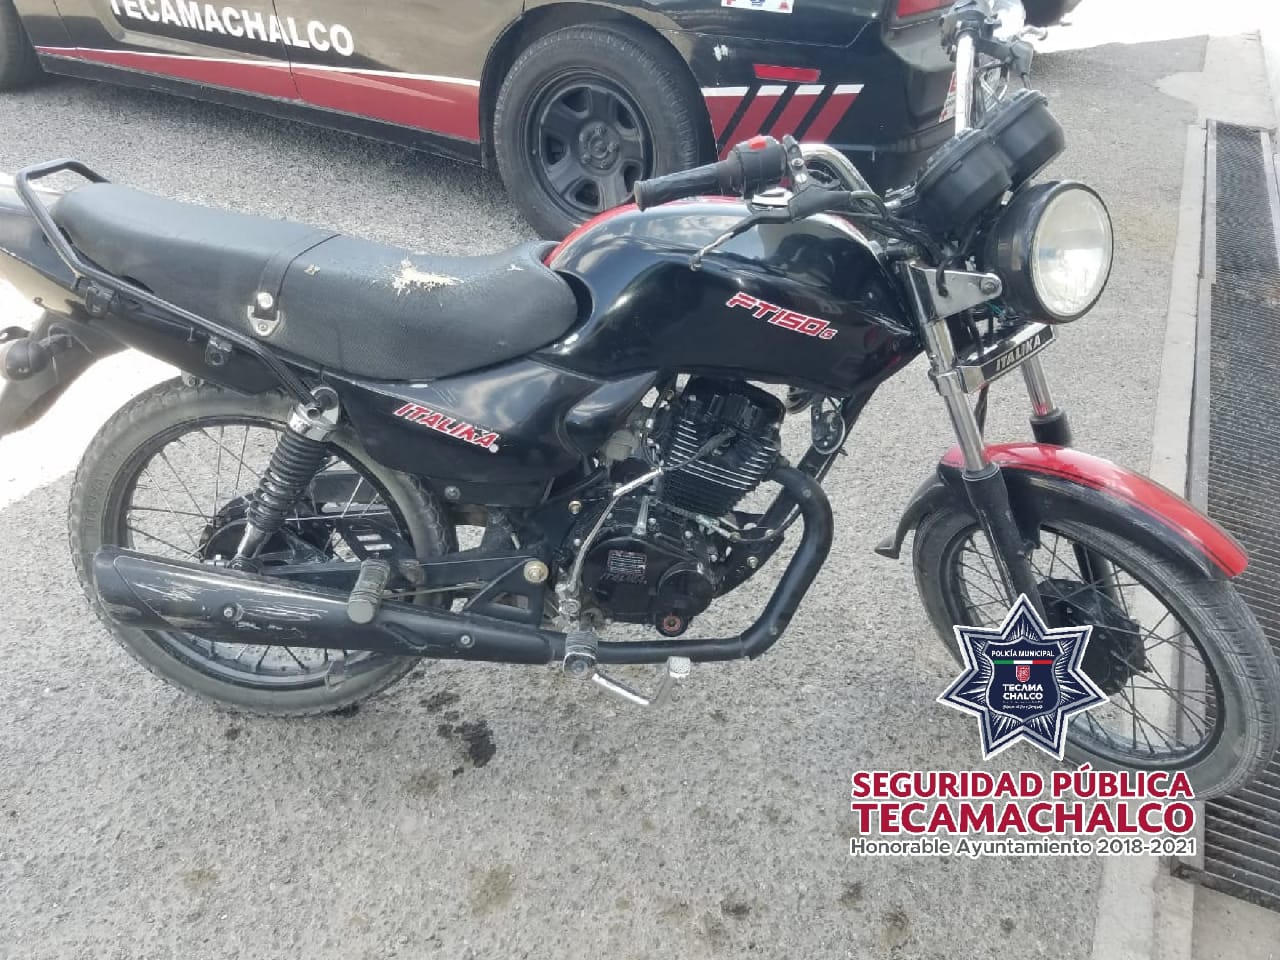 Tras persecución policías recuperan motocicleta robada en Tecamachalco